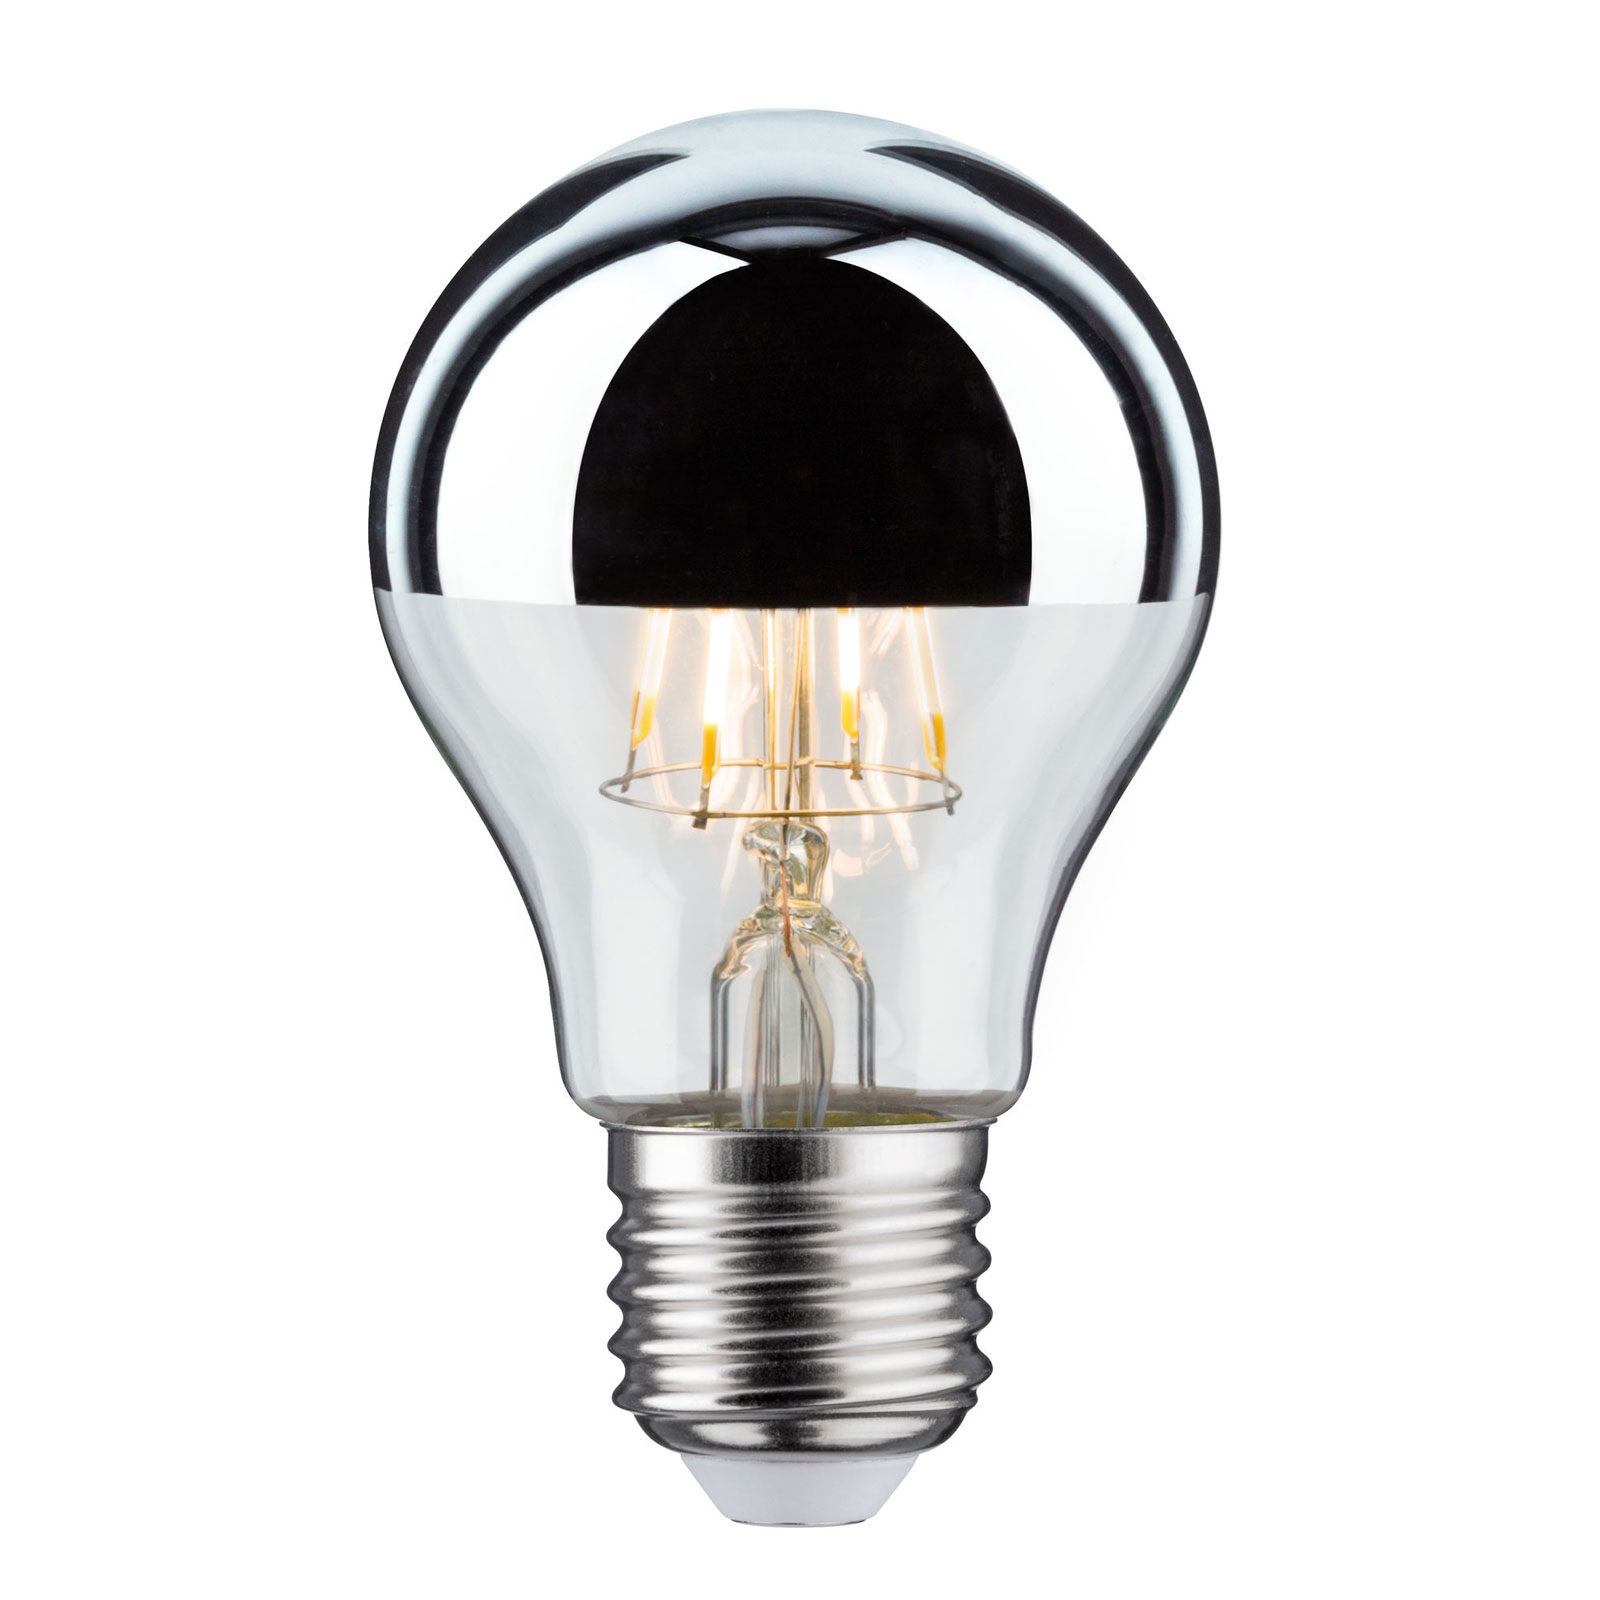 LED-lampe E27 drop 827 hovedspejl 4,8W